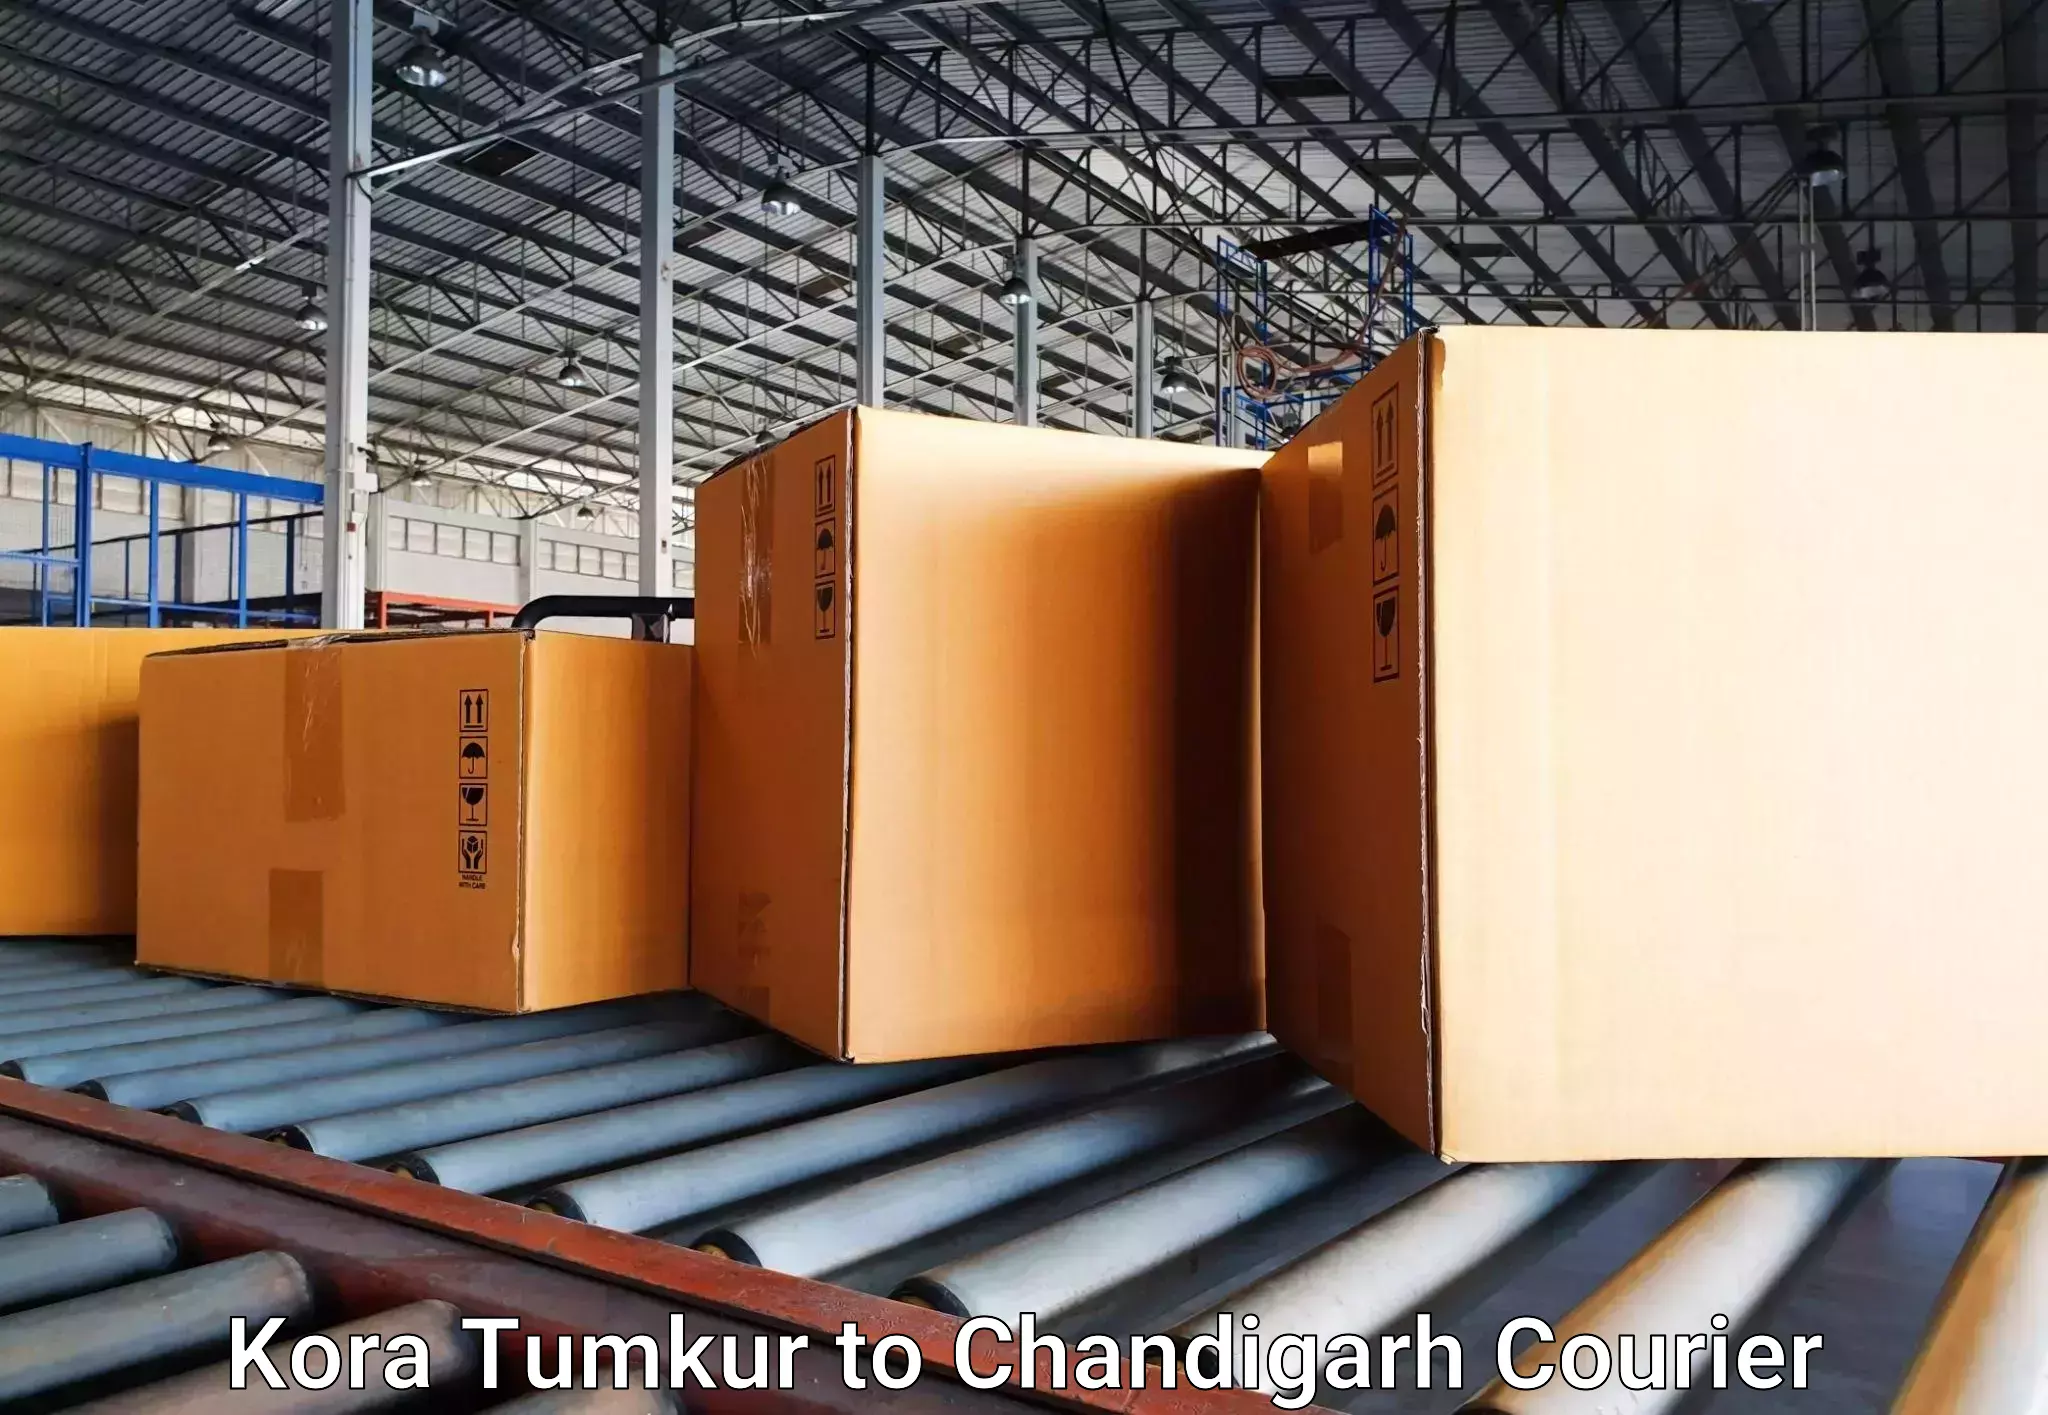 Luggage transit service Kora Tumkur to Chandigarh